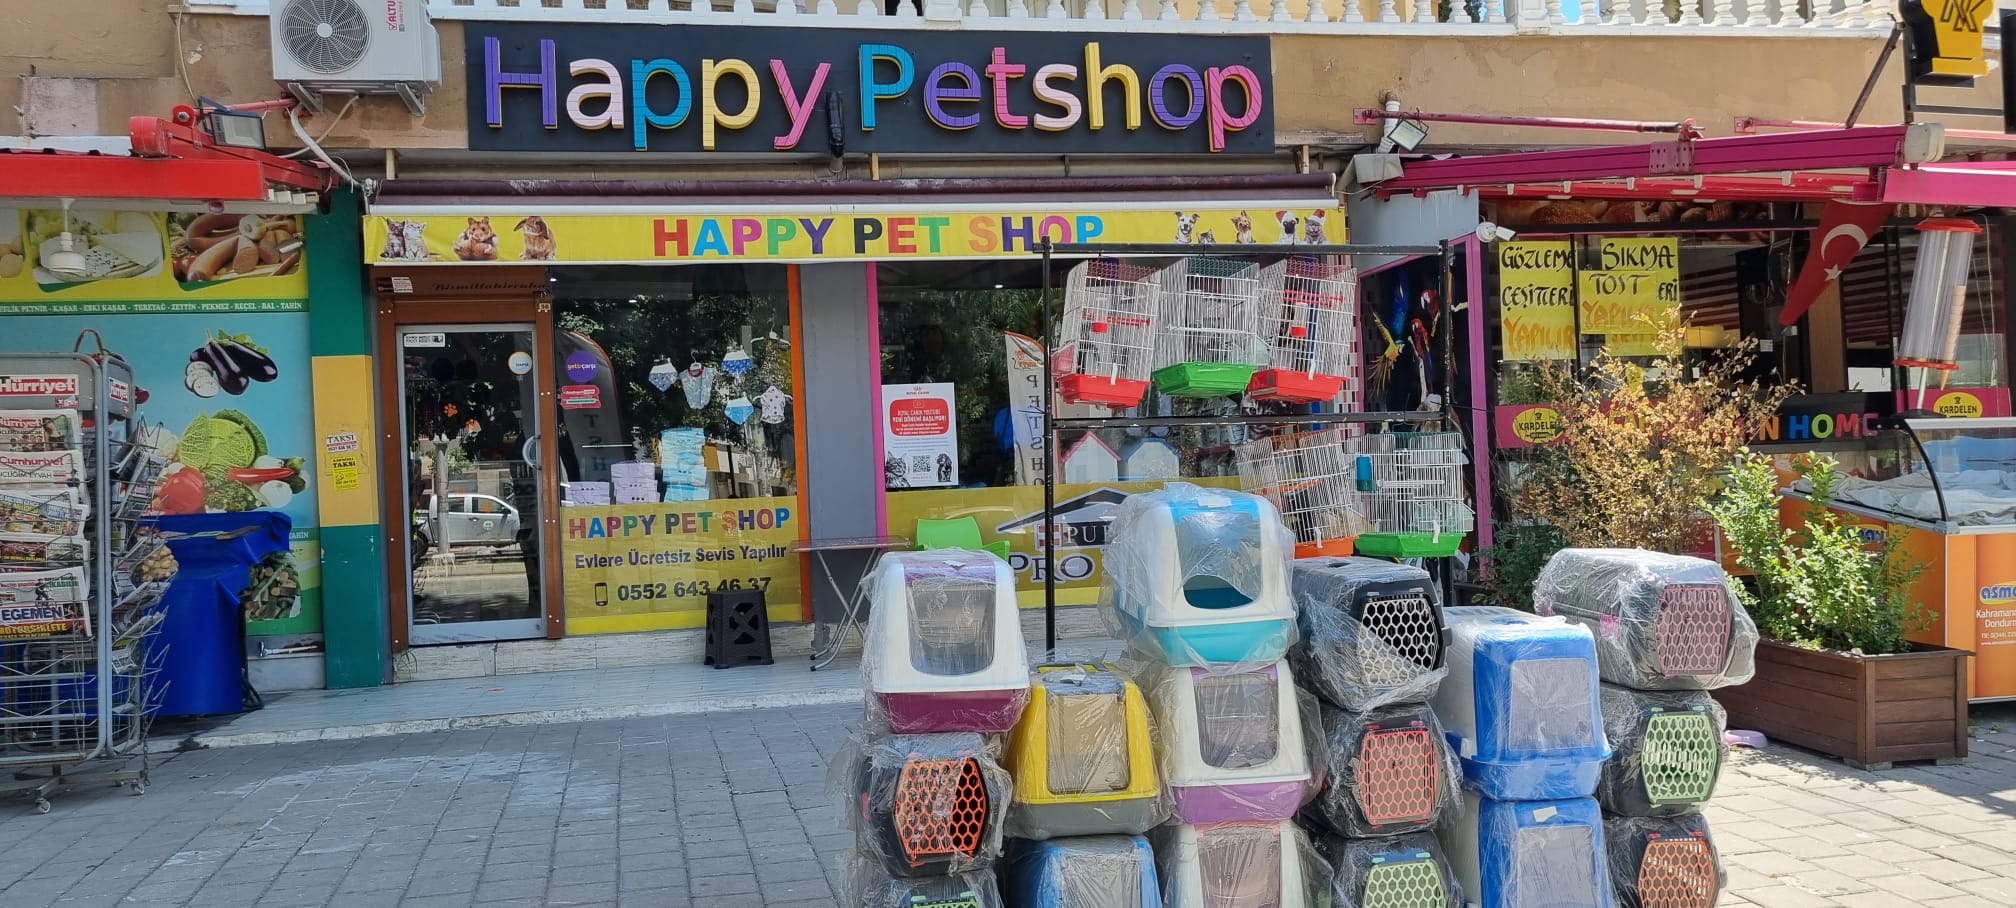 Happy Petshop Çukurova